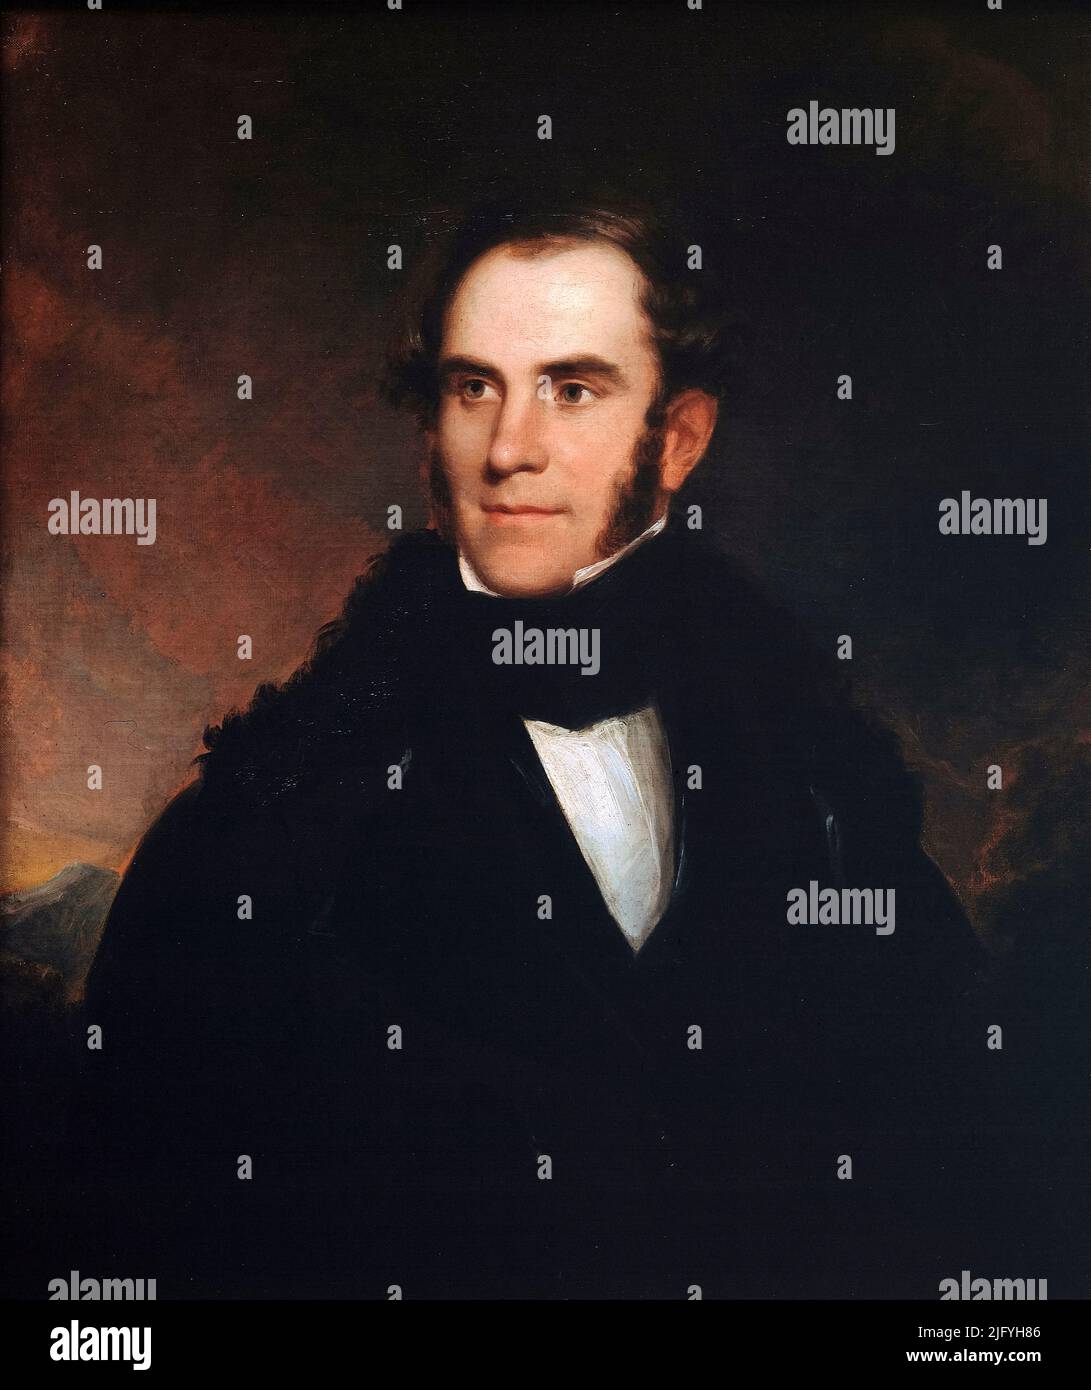 Thomas Cole (1801-1848), peintre anglo-américain, portrait de l'artiste dans l'huile sur toile par Asher Brown Durand, 1837 Banque D'Images